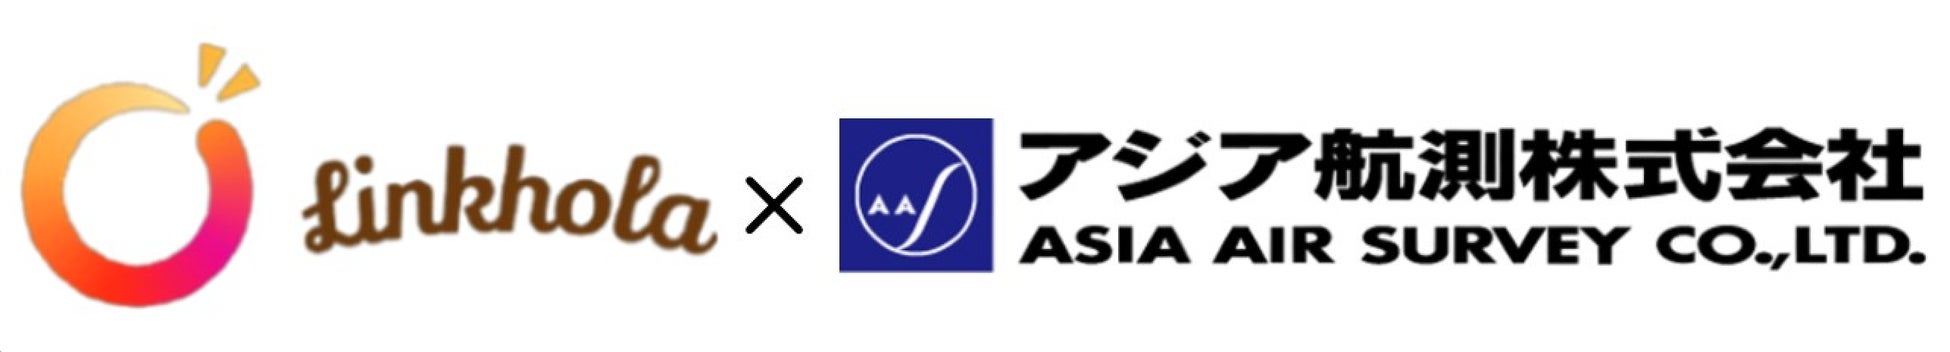 アジア航測株式会社との業務提携に関する基本合意のサブ画像1